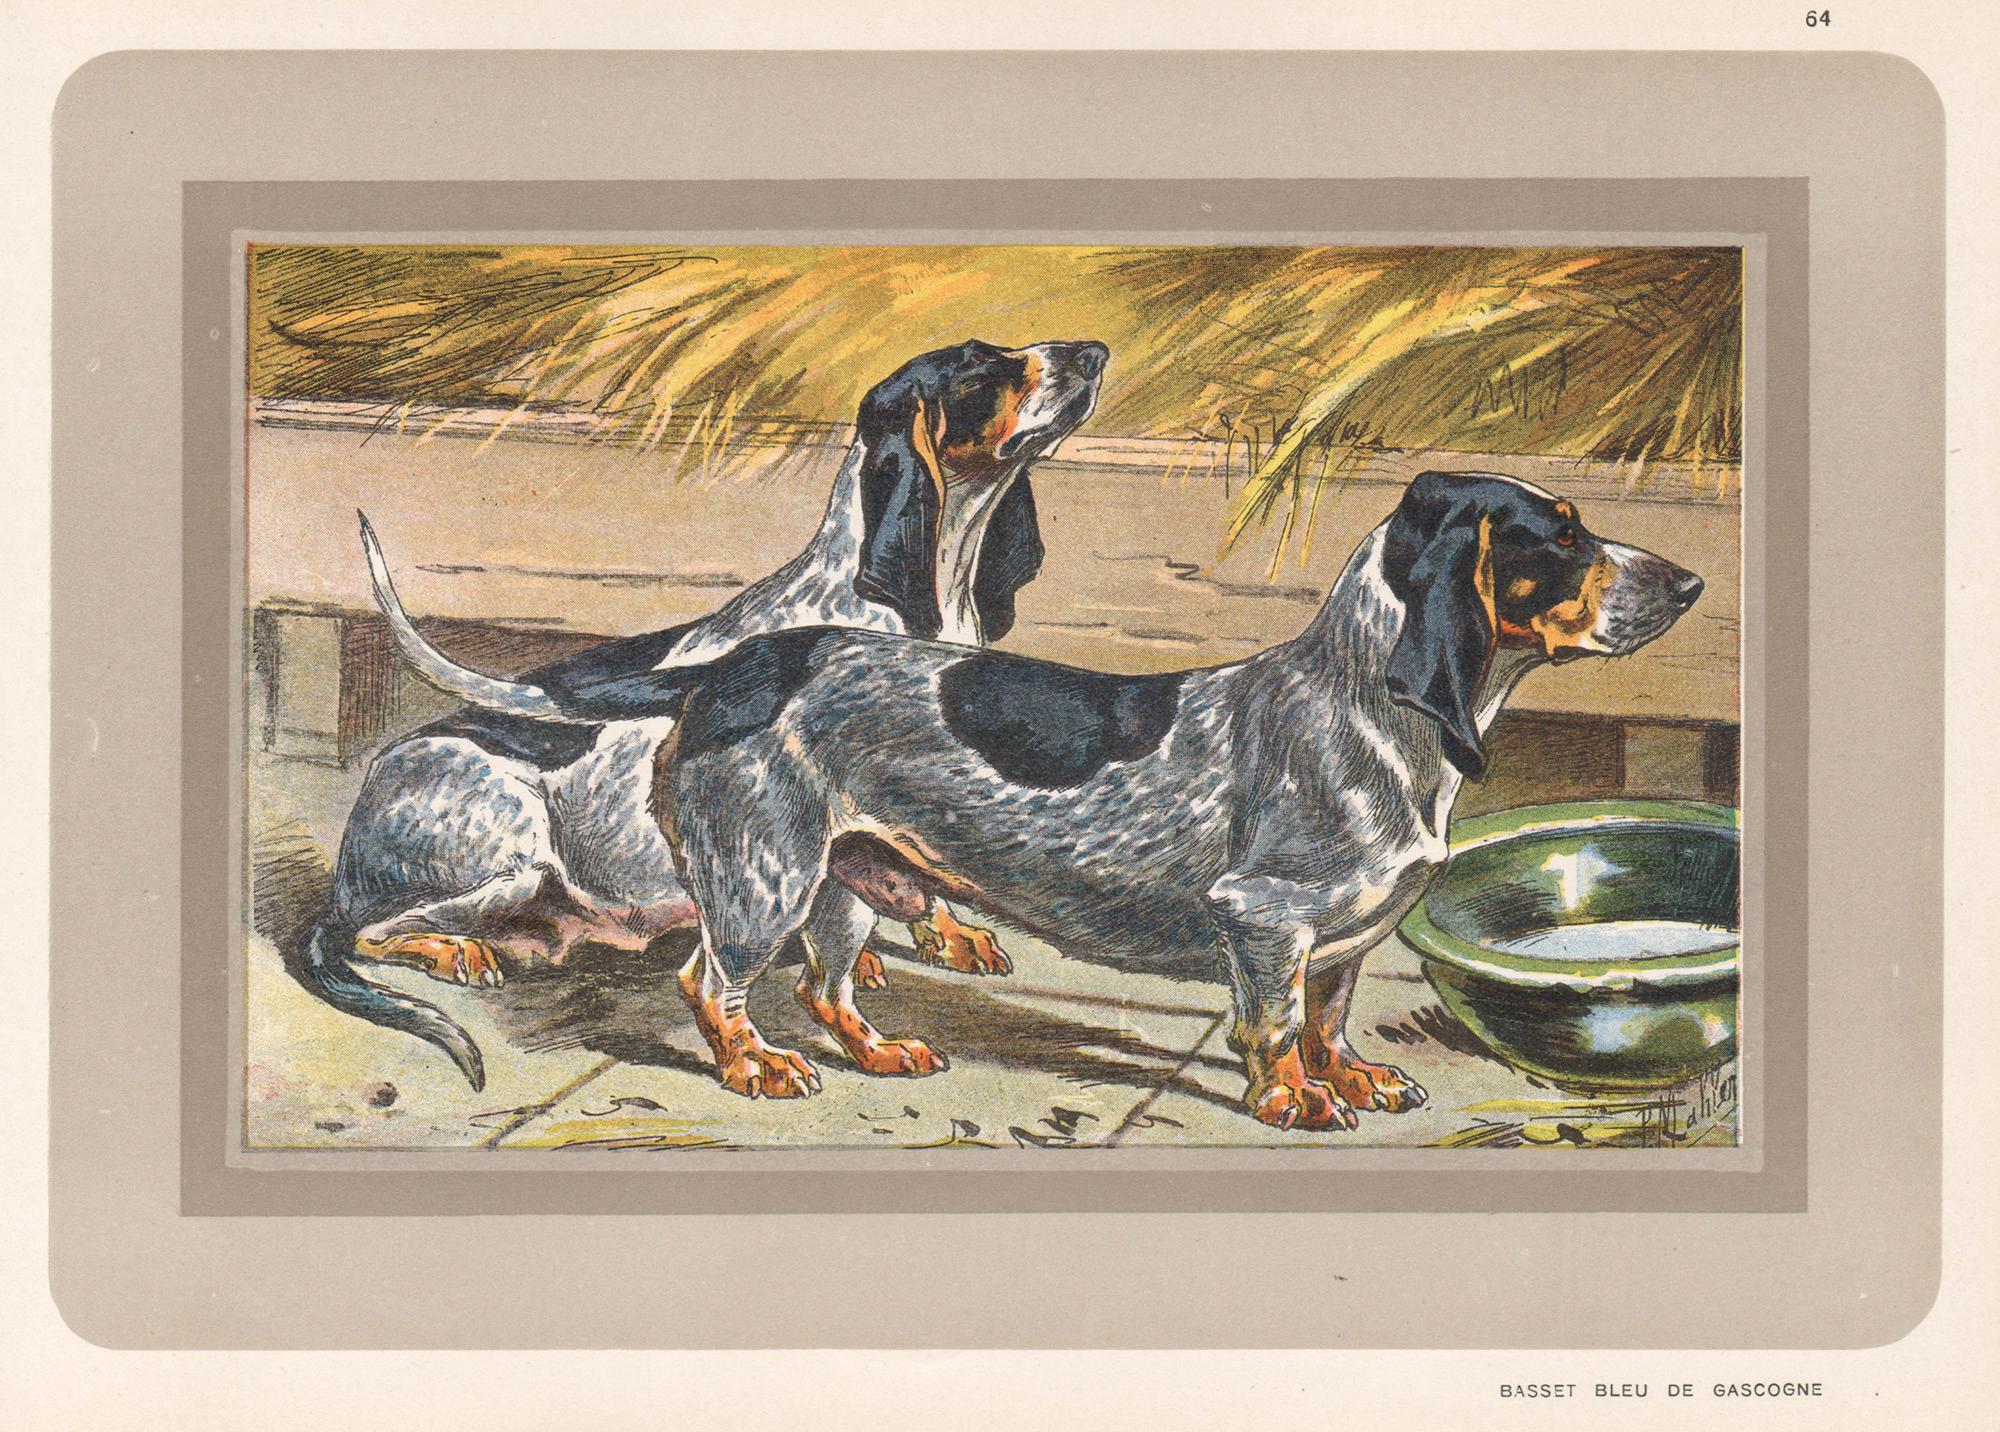 Animal Print P. Mahler - Basset Bleu de Gascogne, impression chromolithographie de chien de chasse français, années 1930